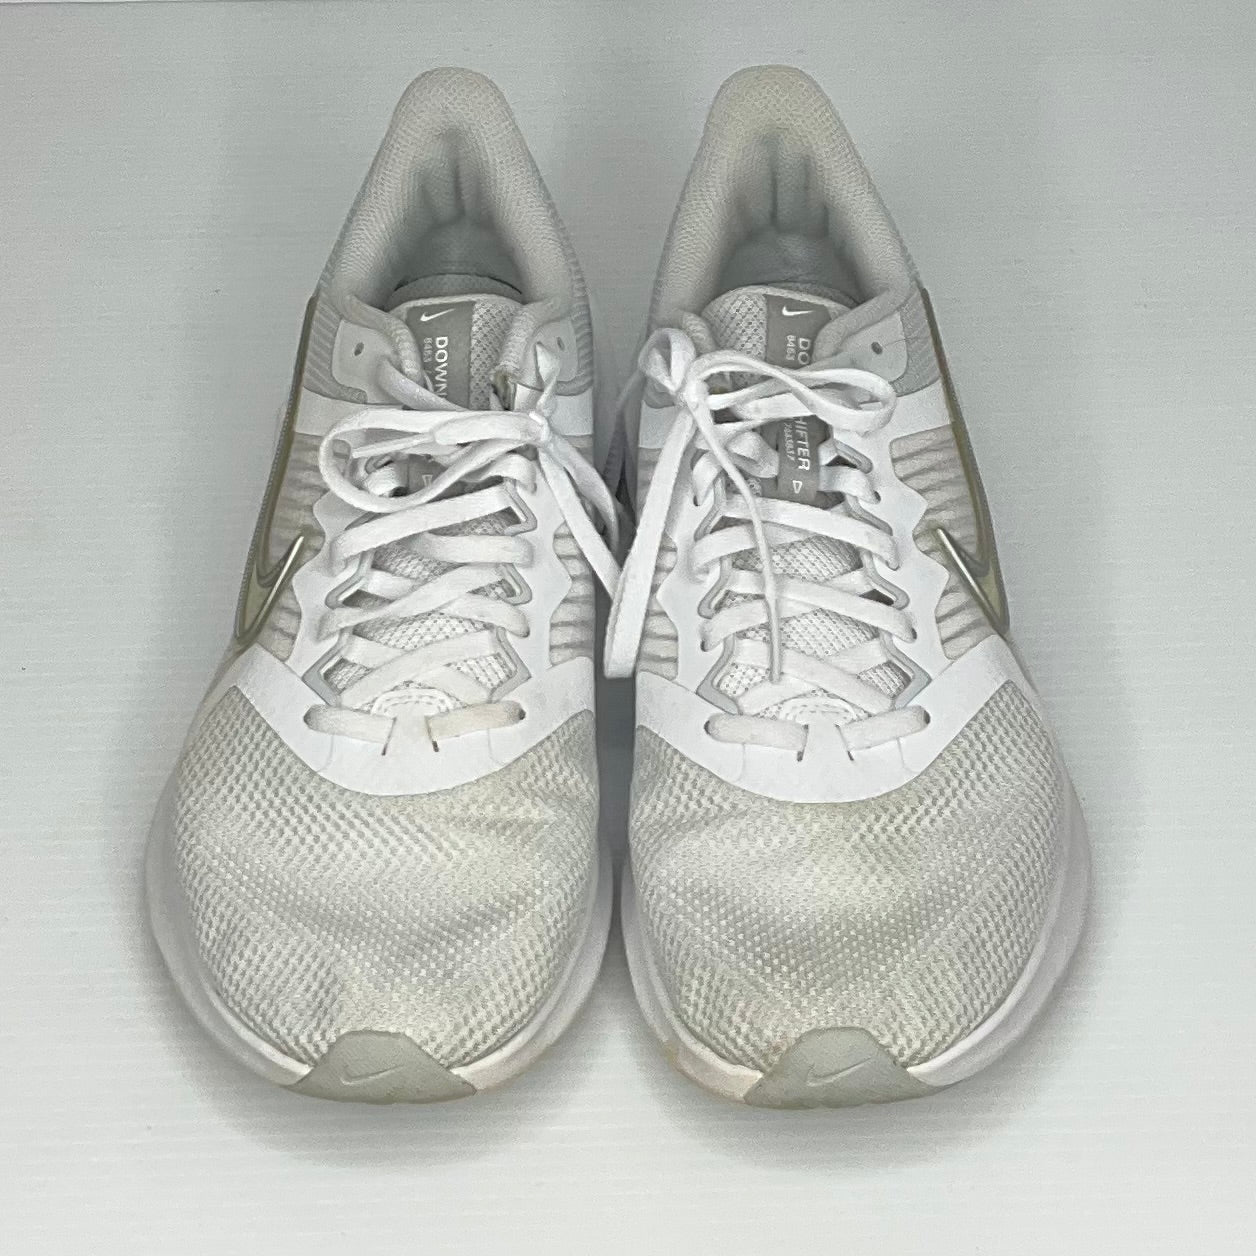 White Shoes Athletic Nike, Size 11